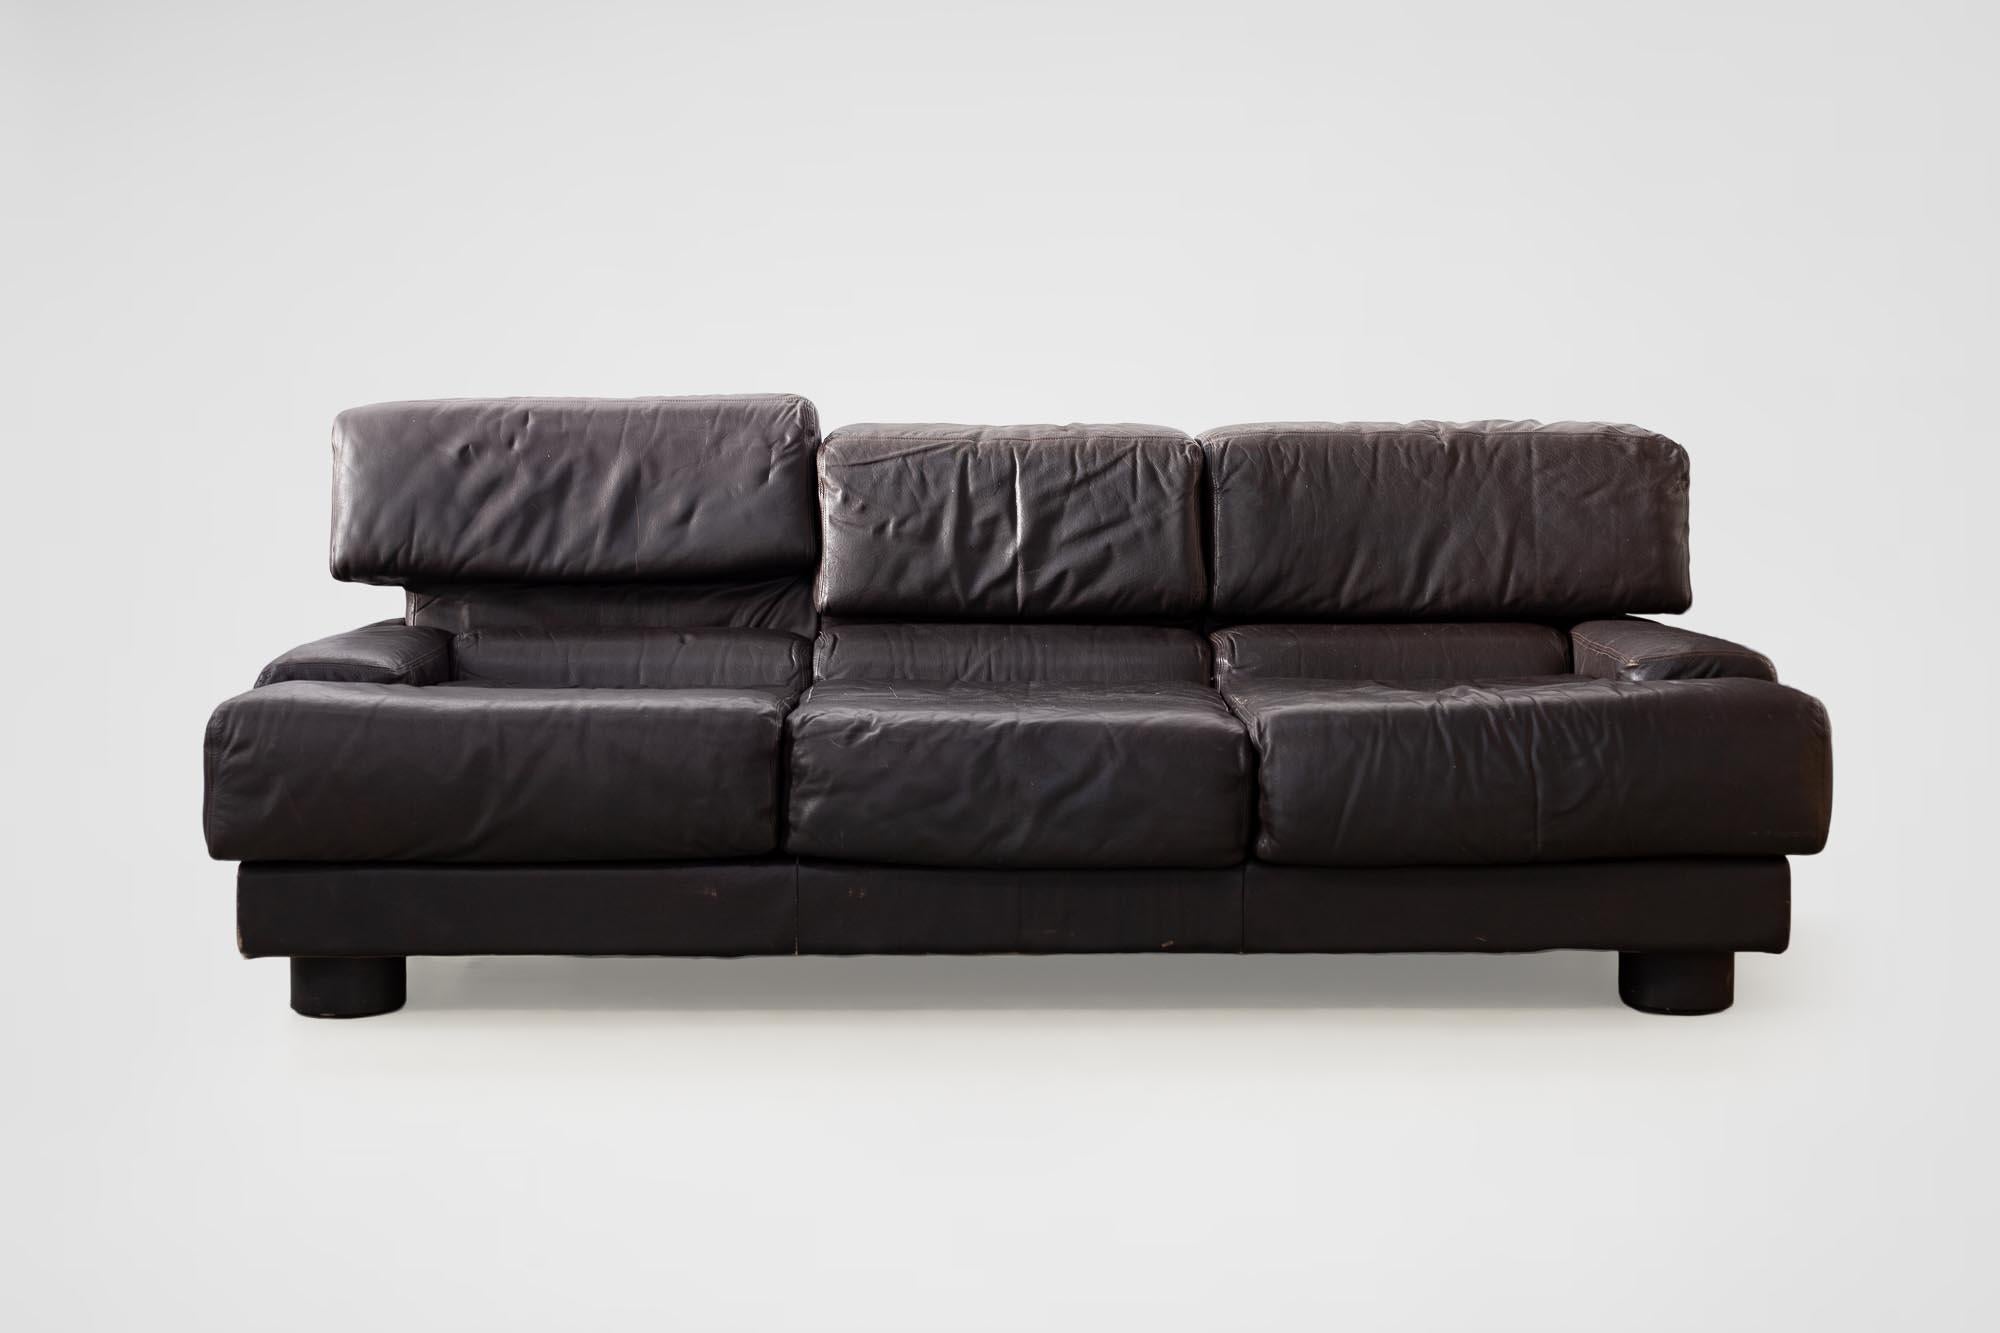 Rare Percival Lafer Sofa in Dark Brown Leather For Sale 10